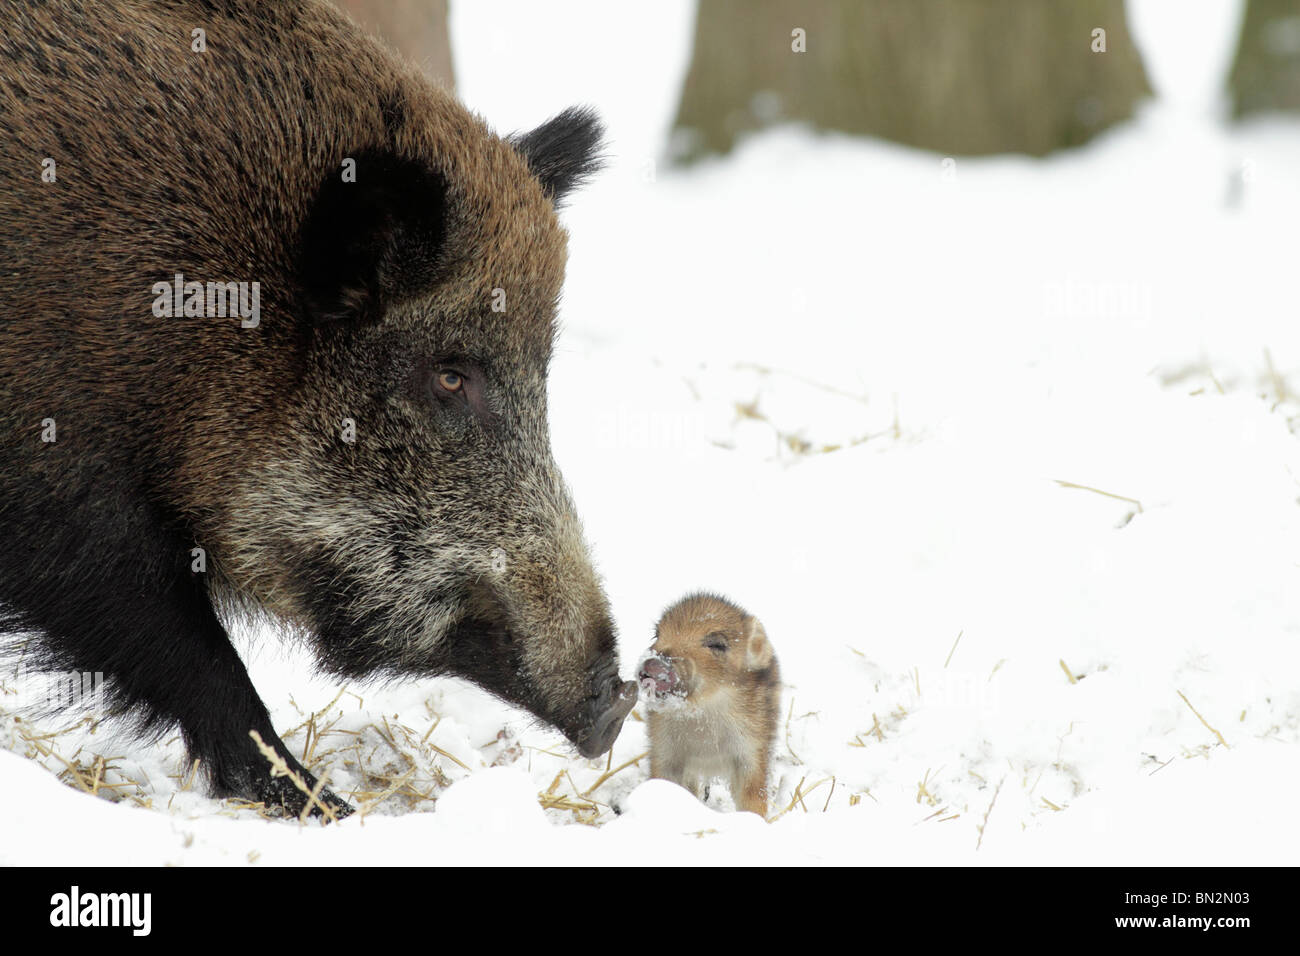 Européen de porc ou de sanglier (Sus scrofa) sow avec bébé Porcinet, hiver, Allemagne Banque D'Images